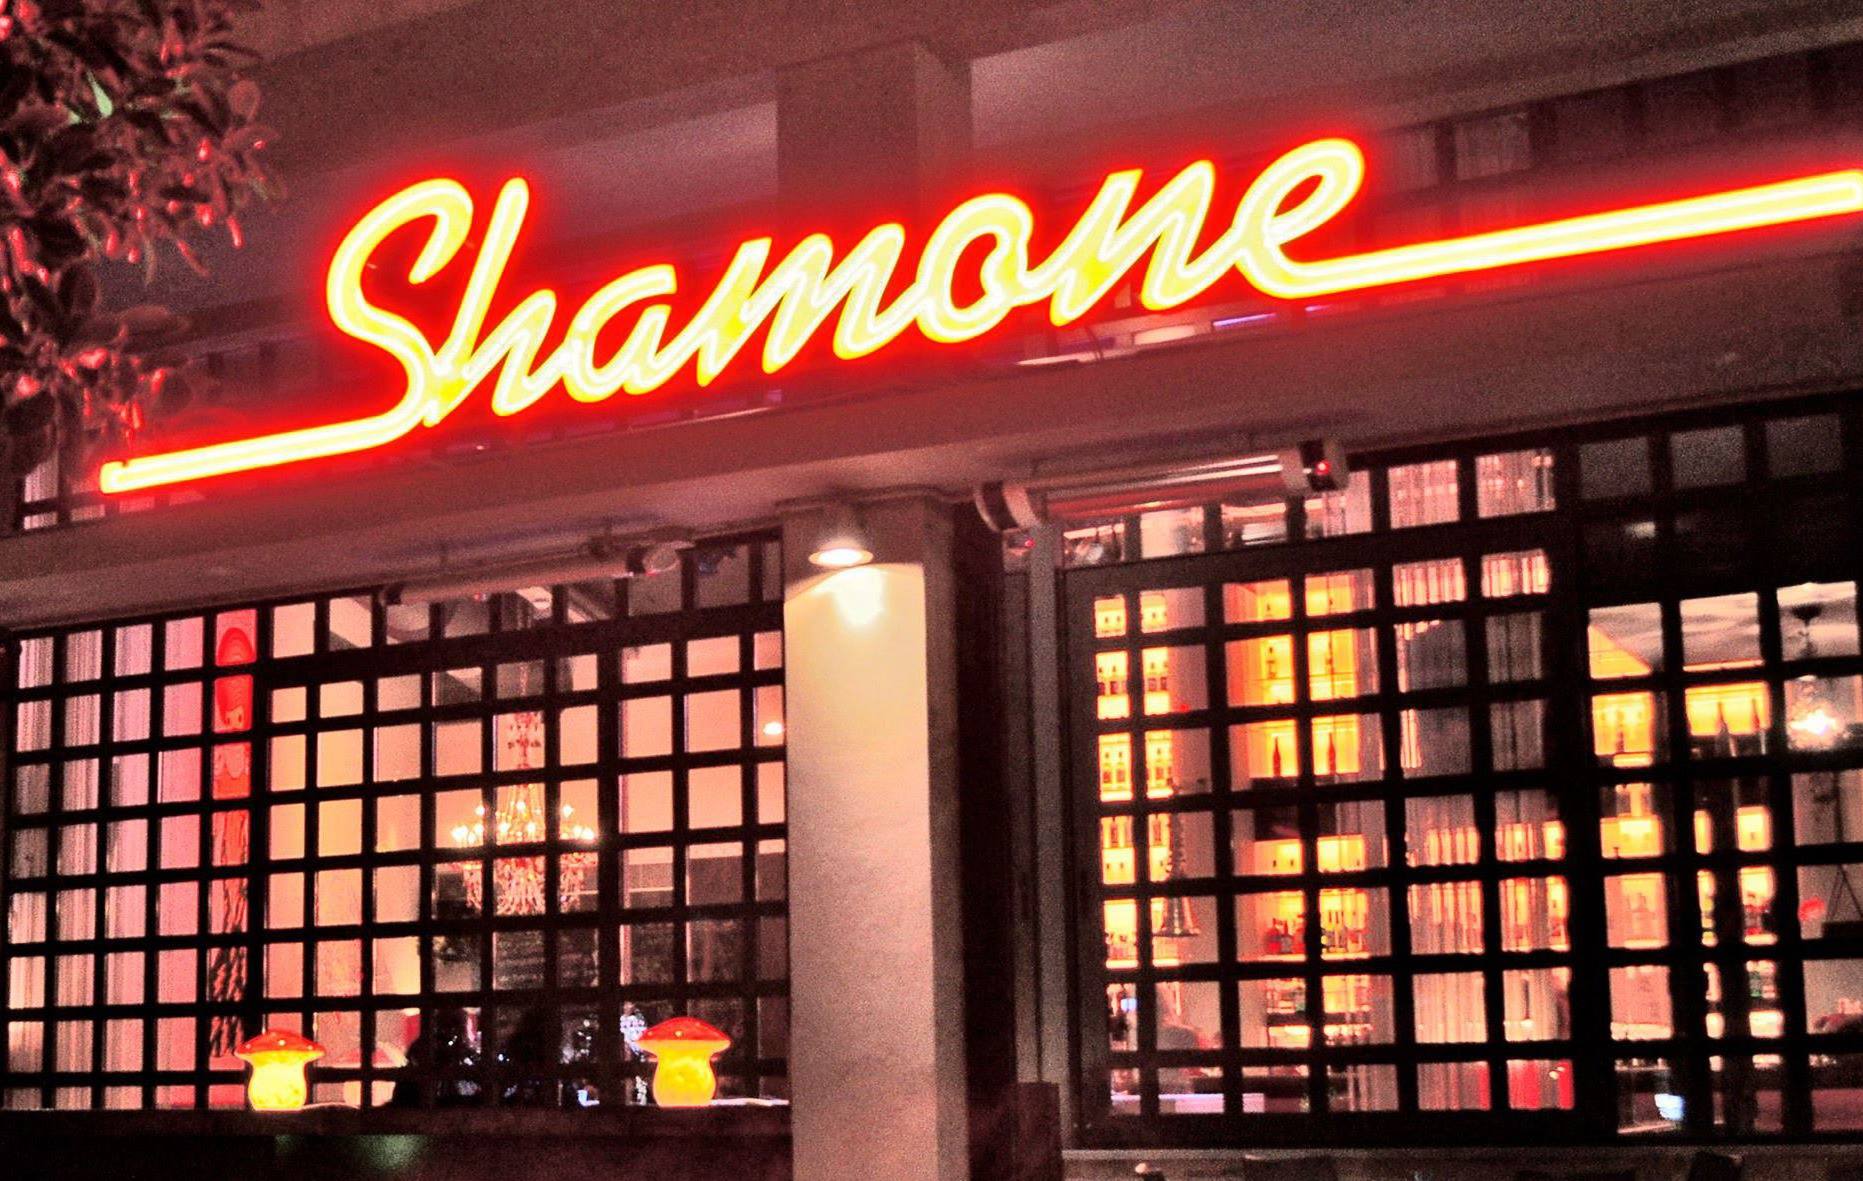 Shamone cocktail bar restaurant